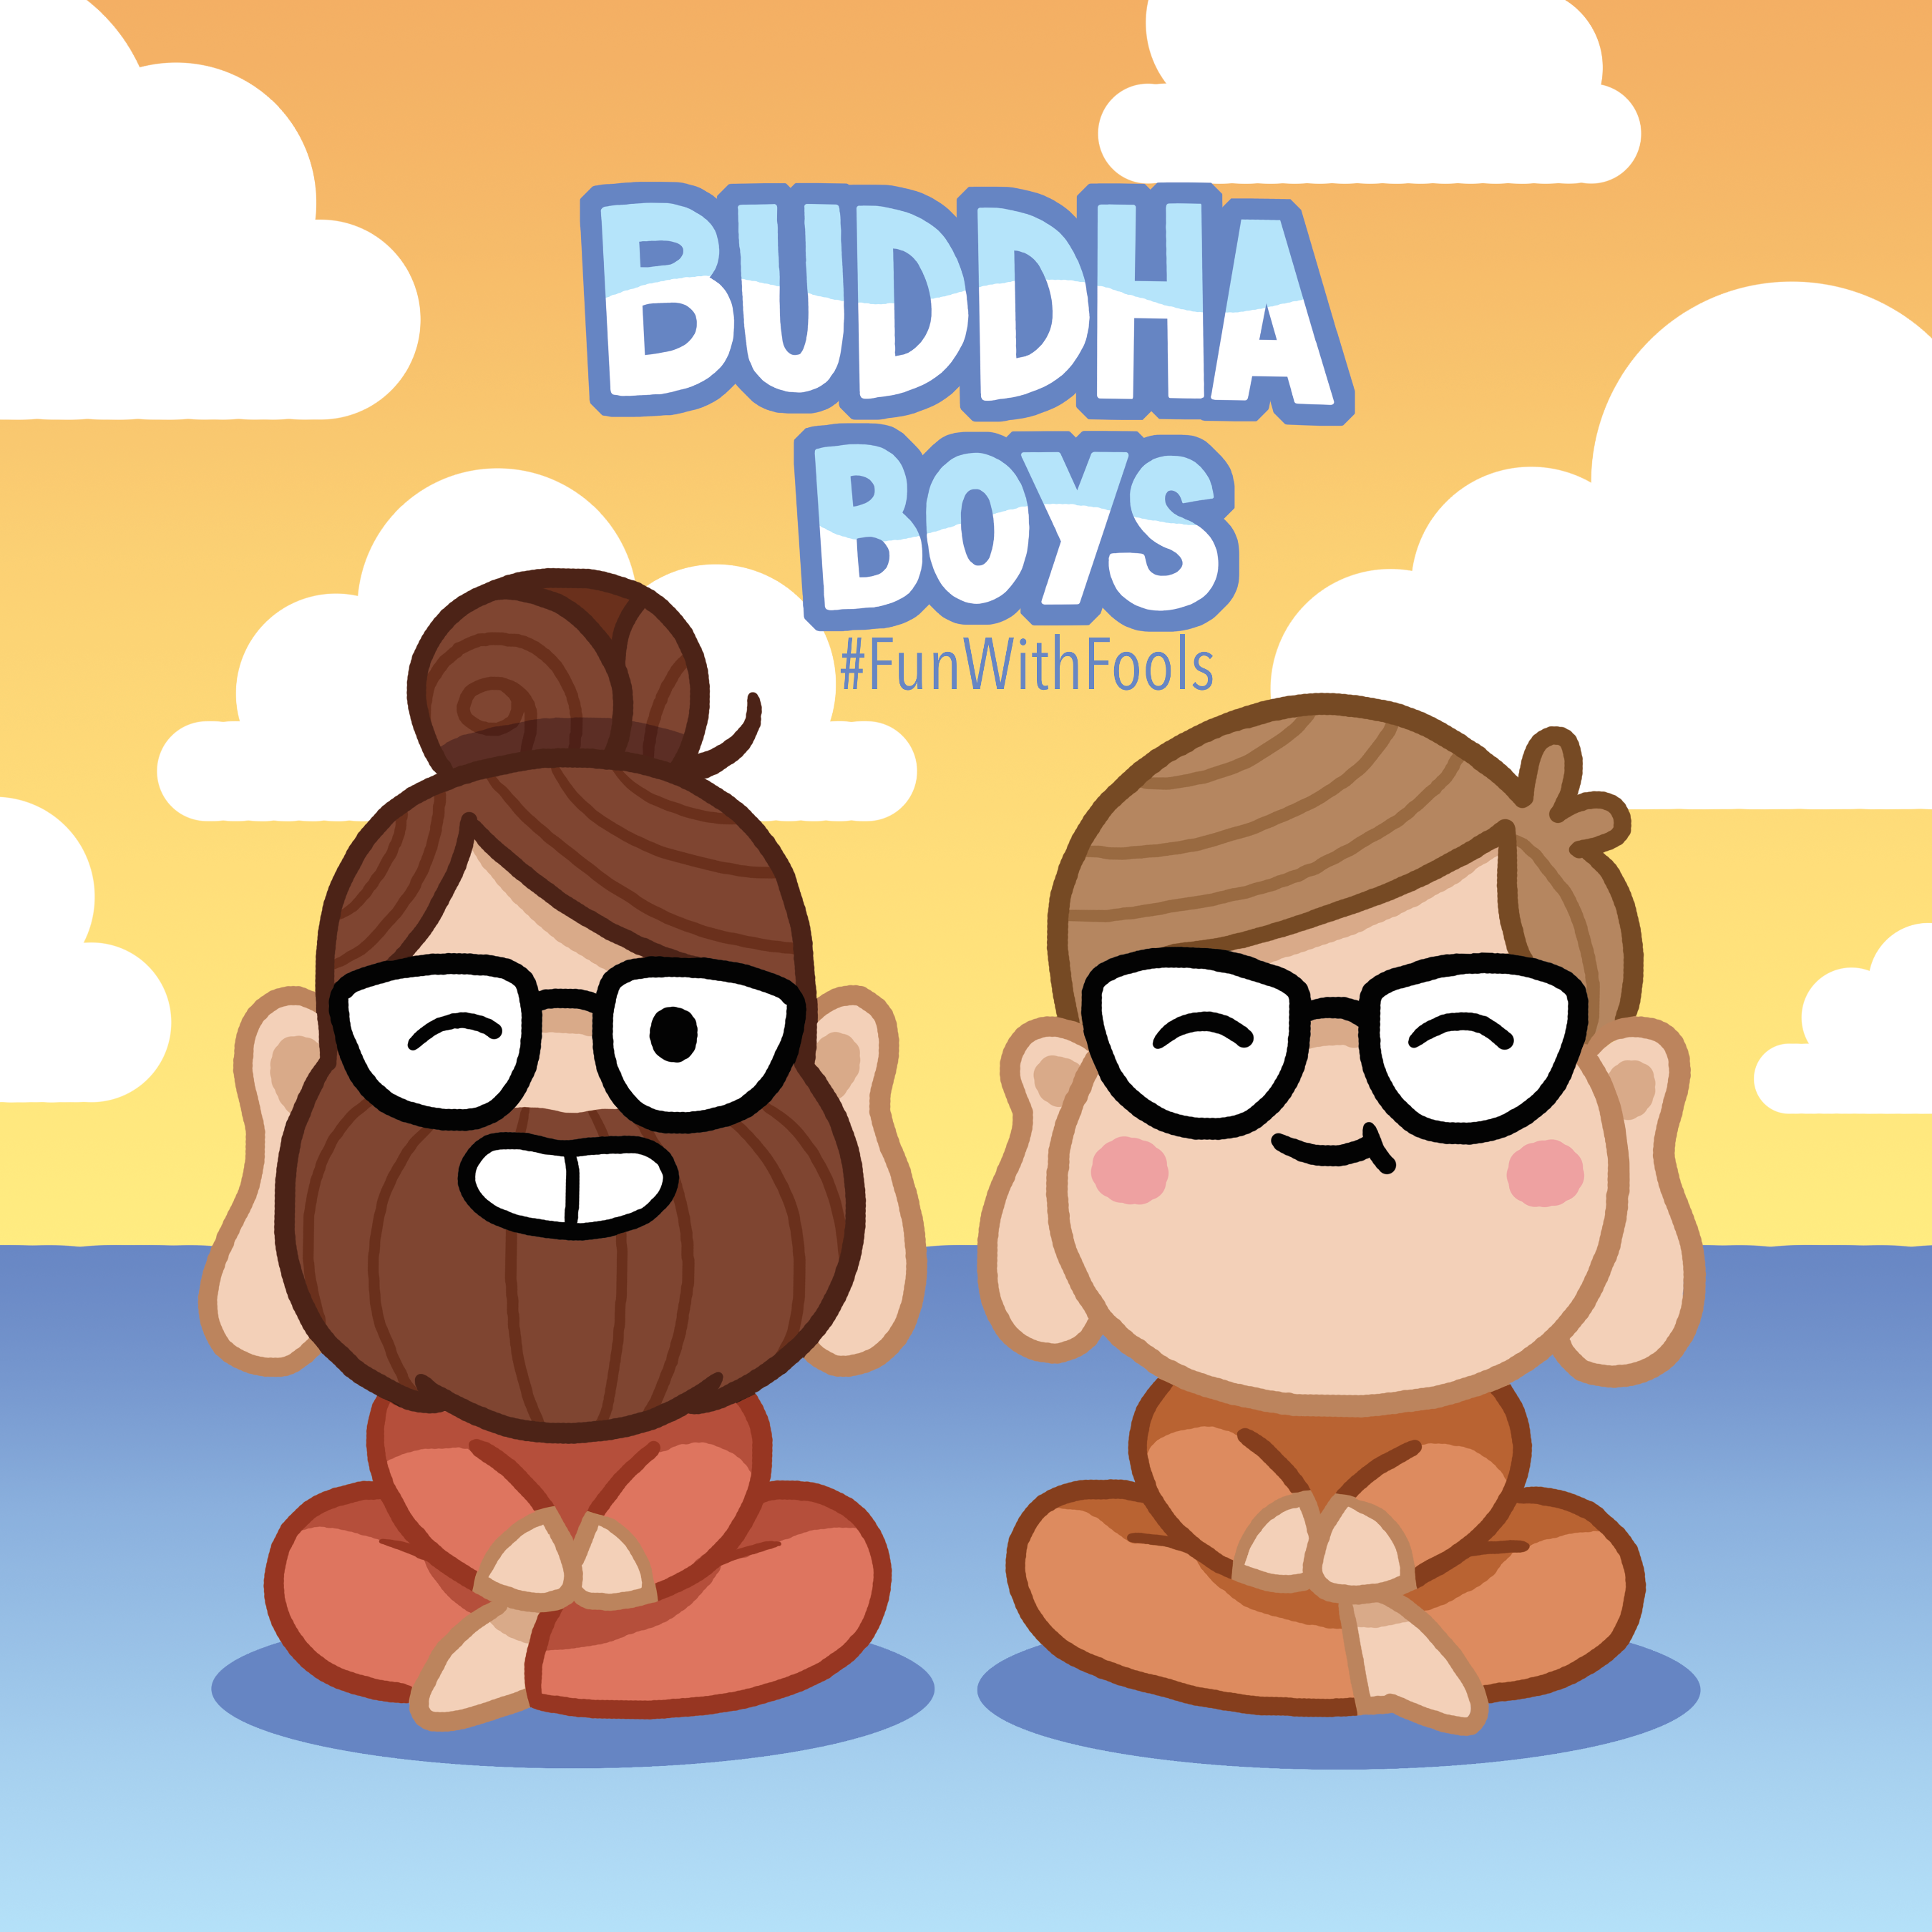 Buddha Boys